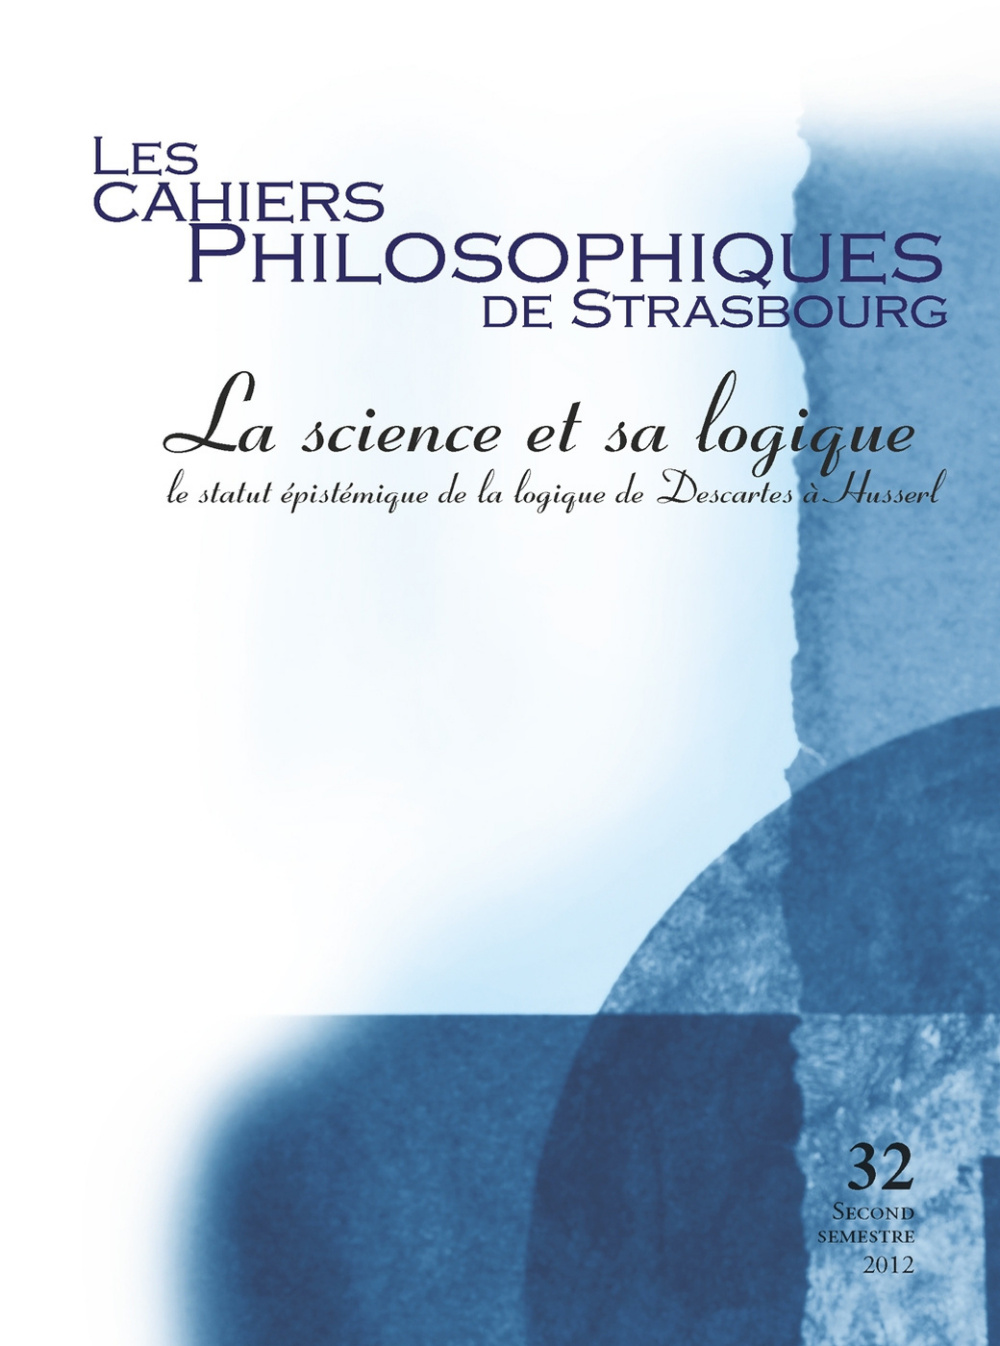 Les Cahiers philosophiques de Strasbourg n°32/2012